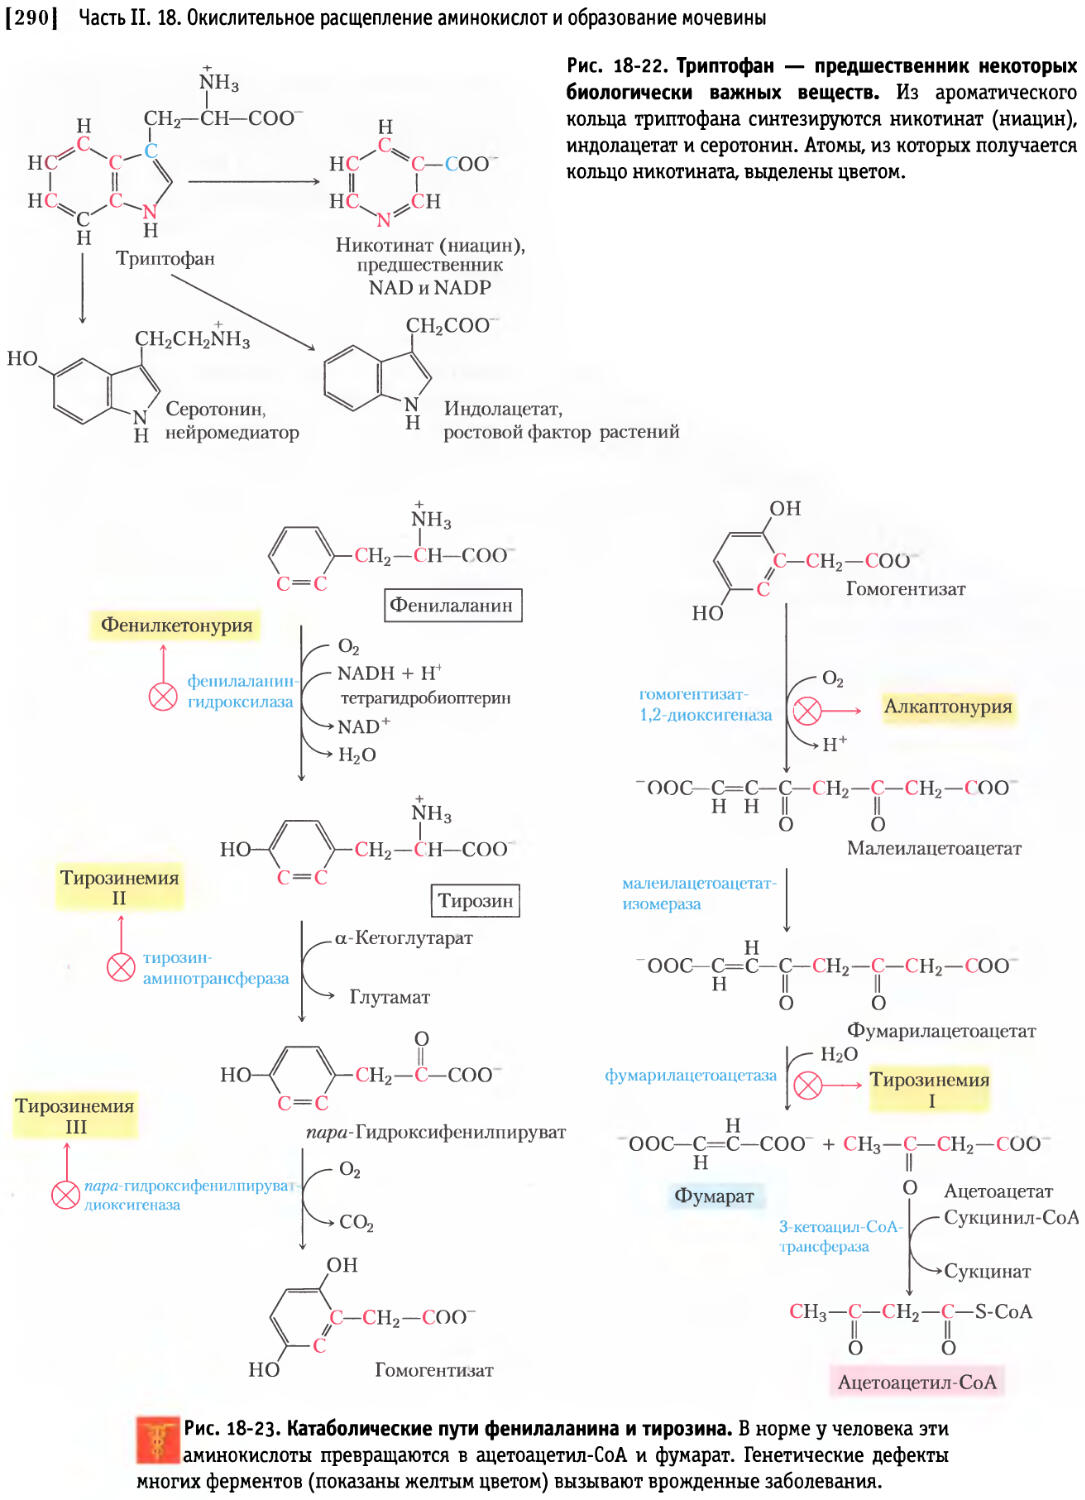 Общие пути метаболизма аминокислот. Схема альтернативного пути превращения фенилаланина. Схема катаболизма фенилаланина. Альтернативный путь катаболизма фенилаланина. Схема катаболизма тирозина в печени.